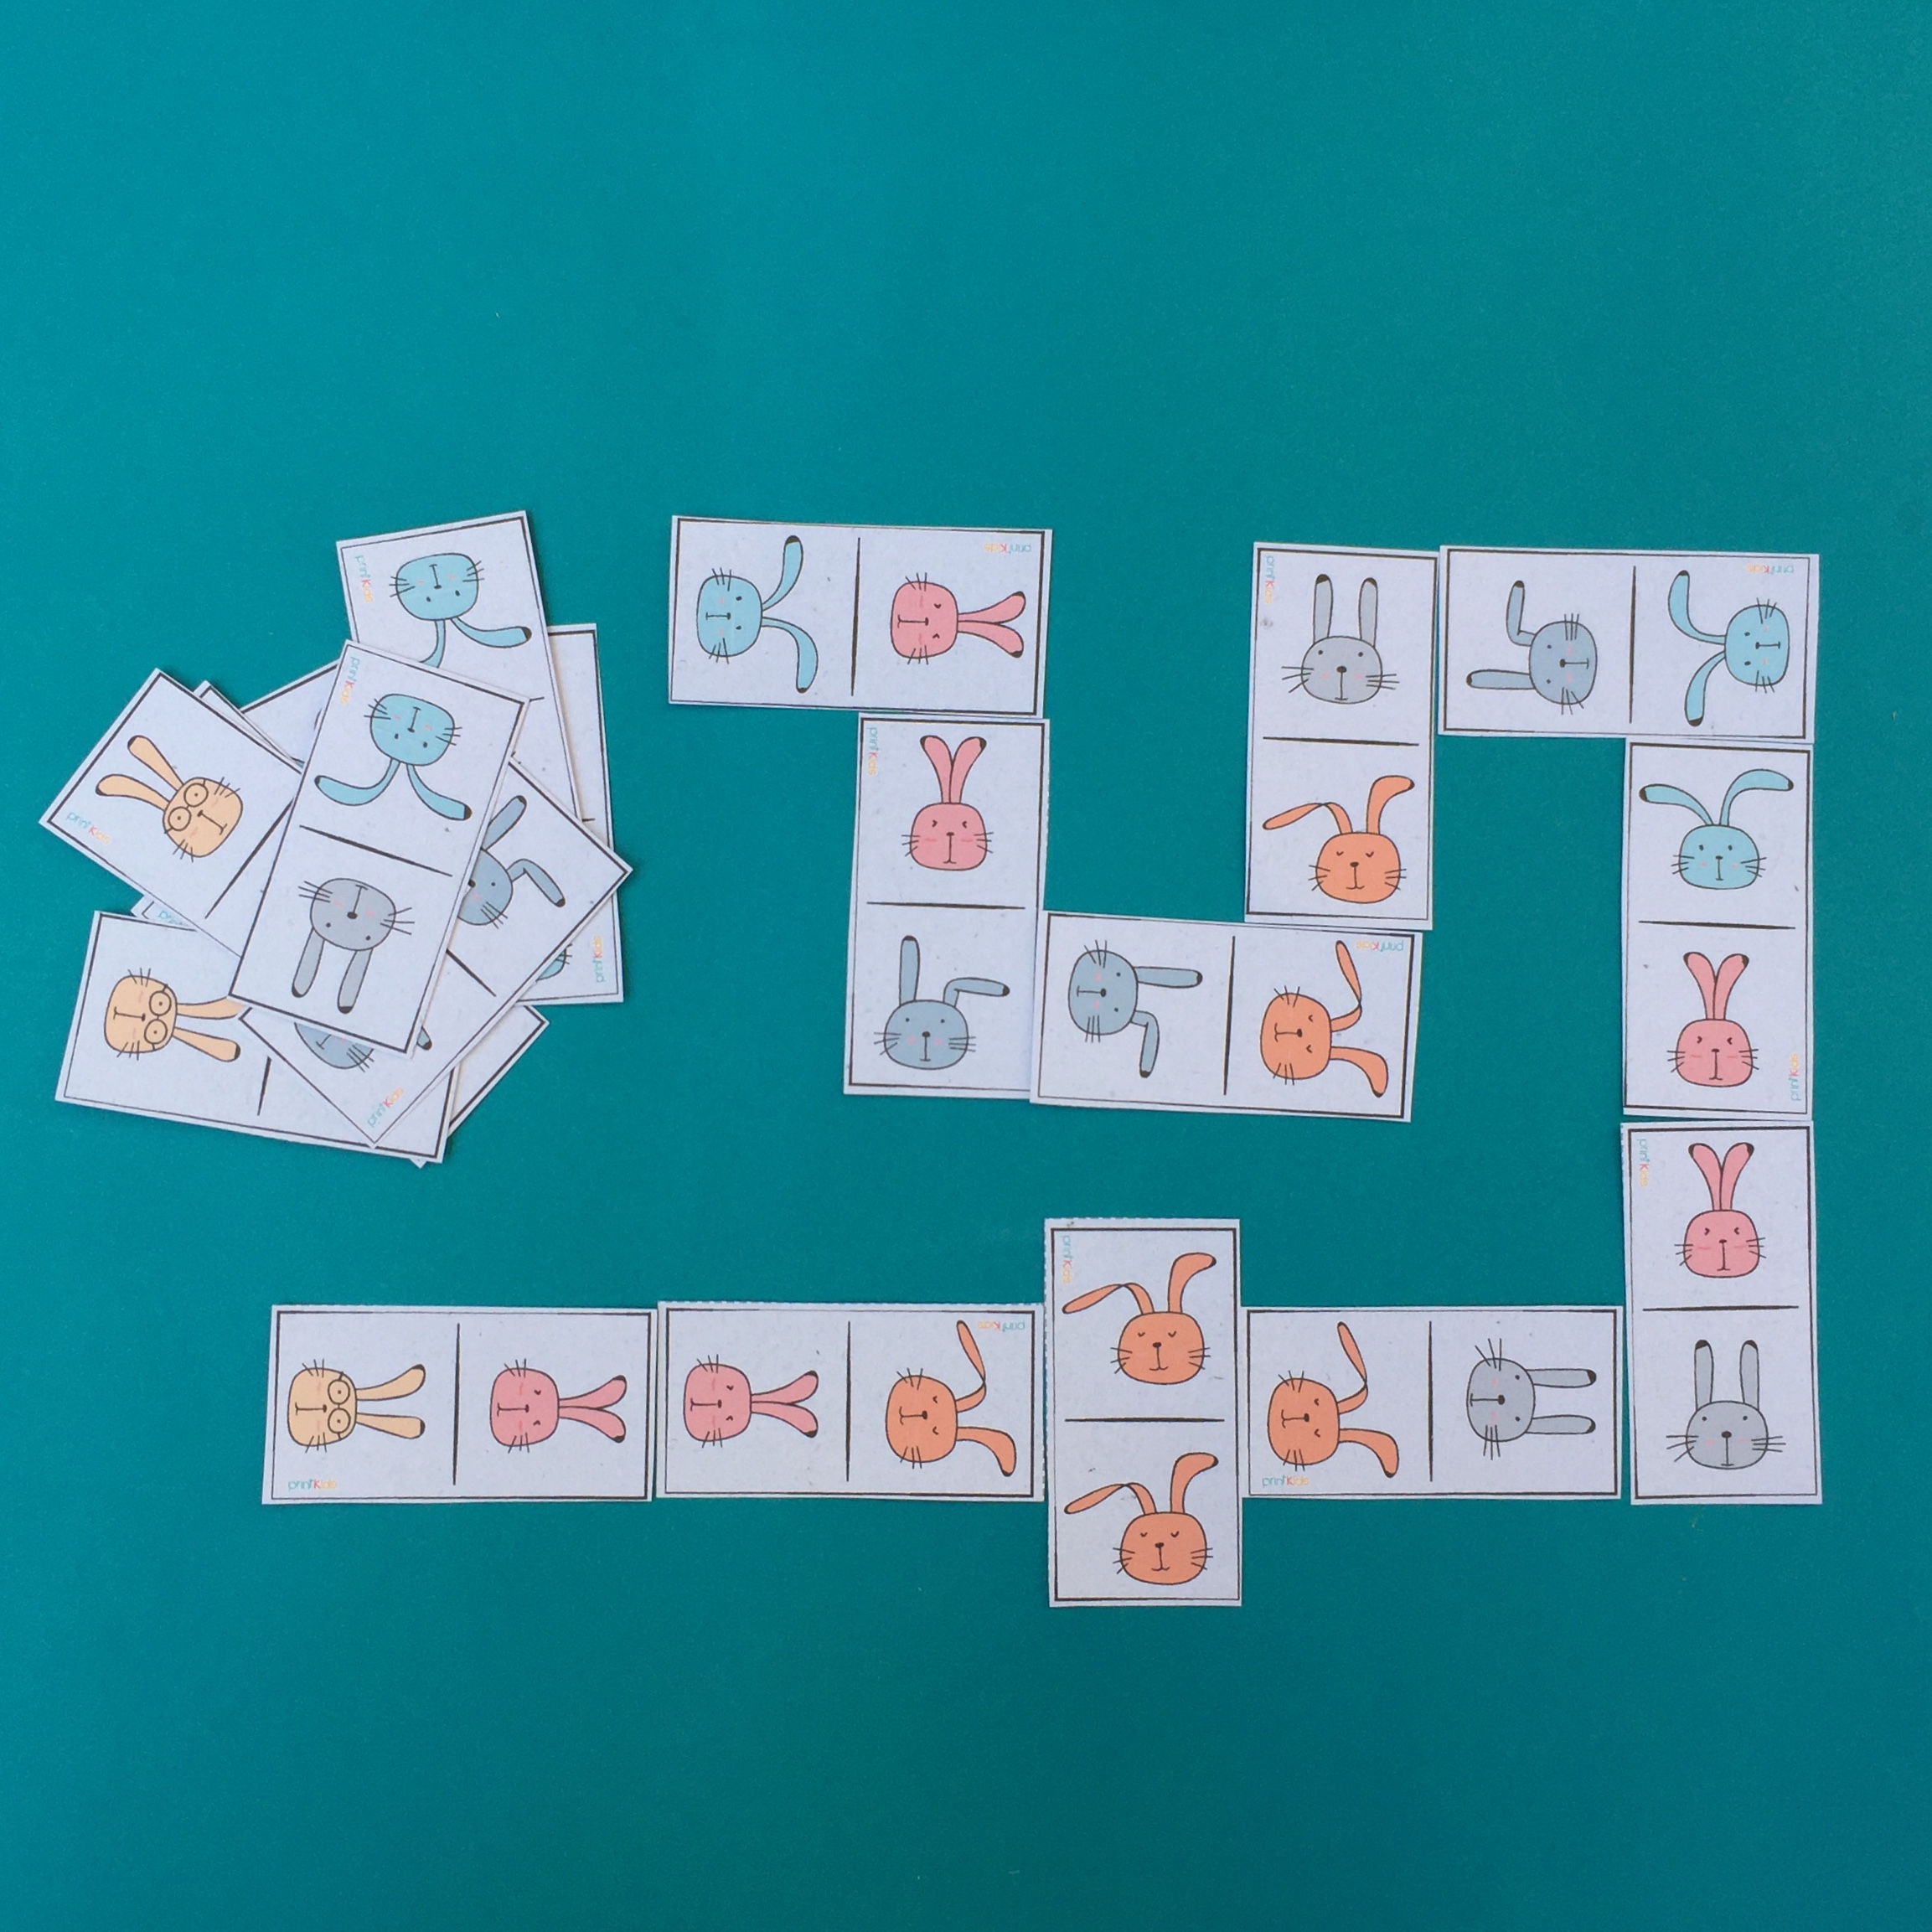 Jogo de dominó para imprimir e brincar com as regras do jogo